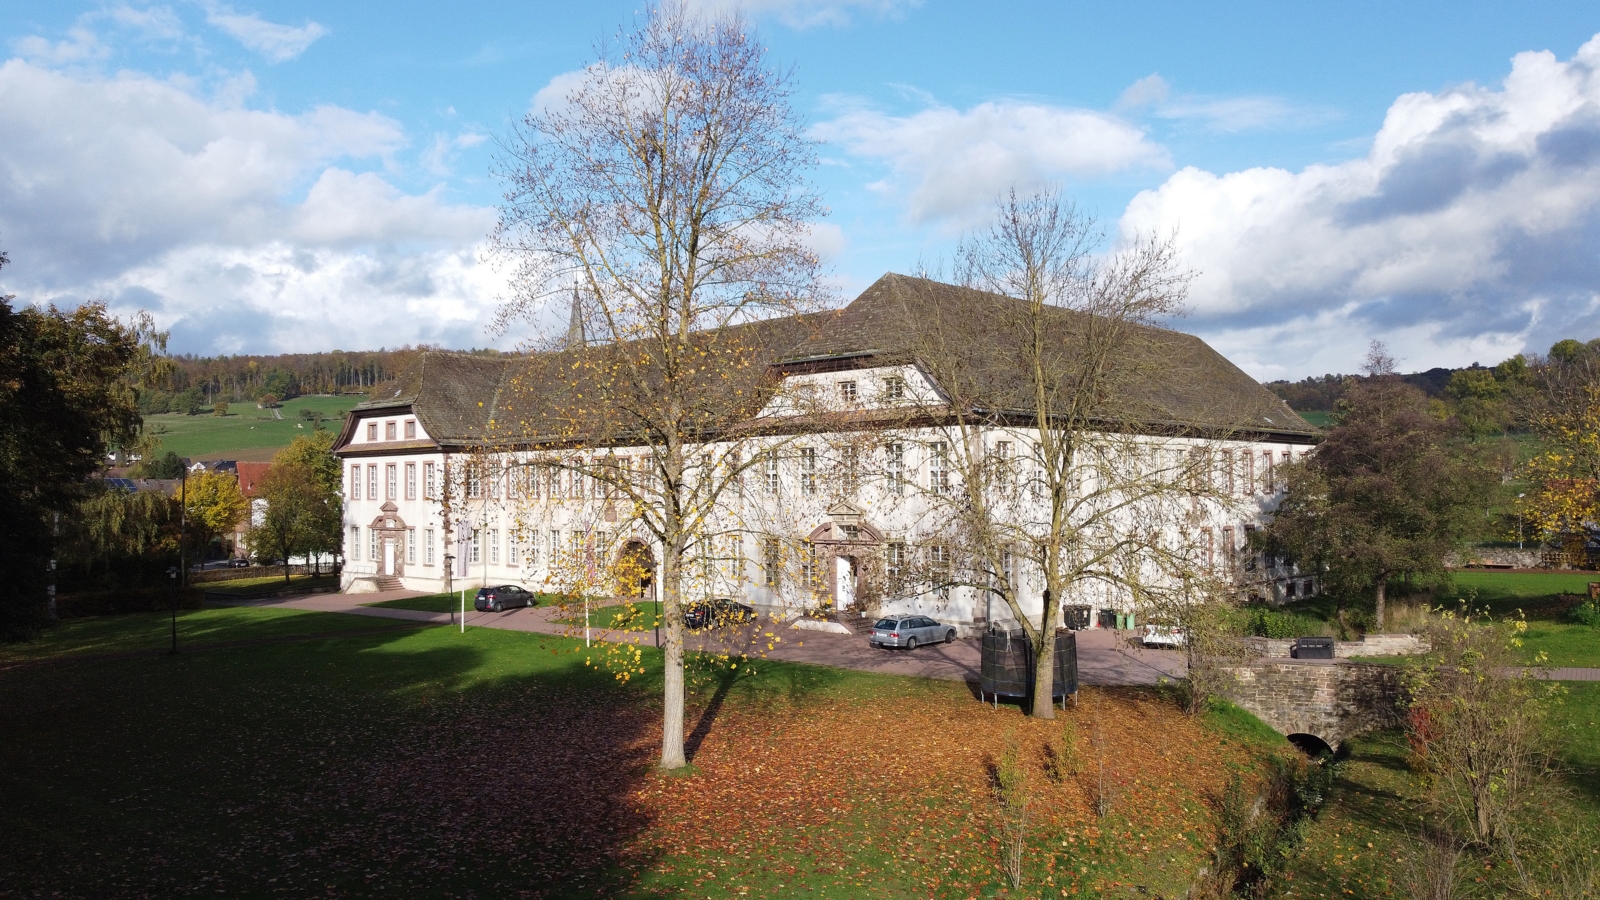 Koptisch-Orthodoxes Kloster in Höxter - Brenkhausen im Herbst 2022 Foto: Dieter Obermeyer